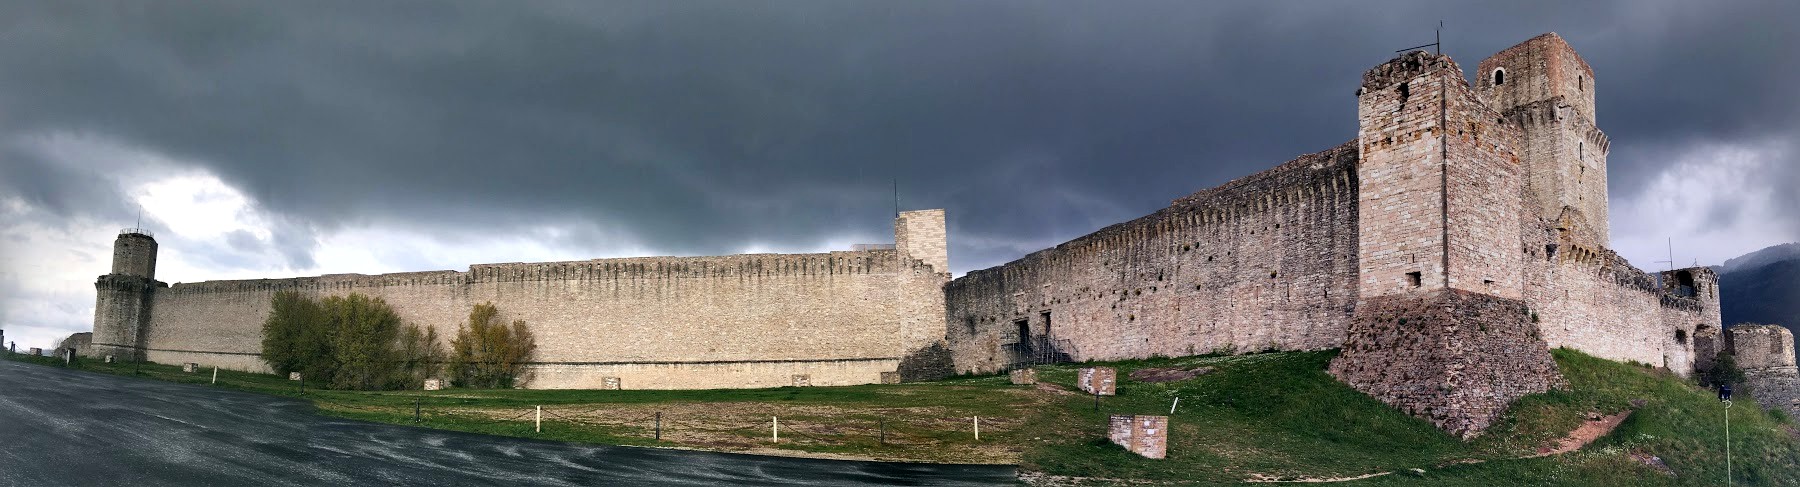 Крепость Рокка Маджоле в Ассизи